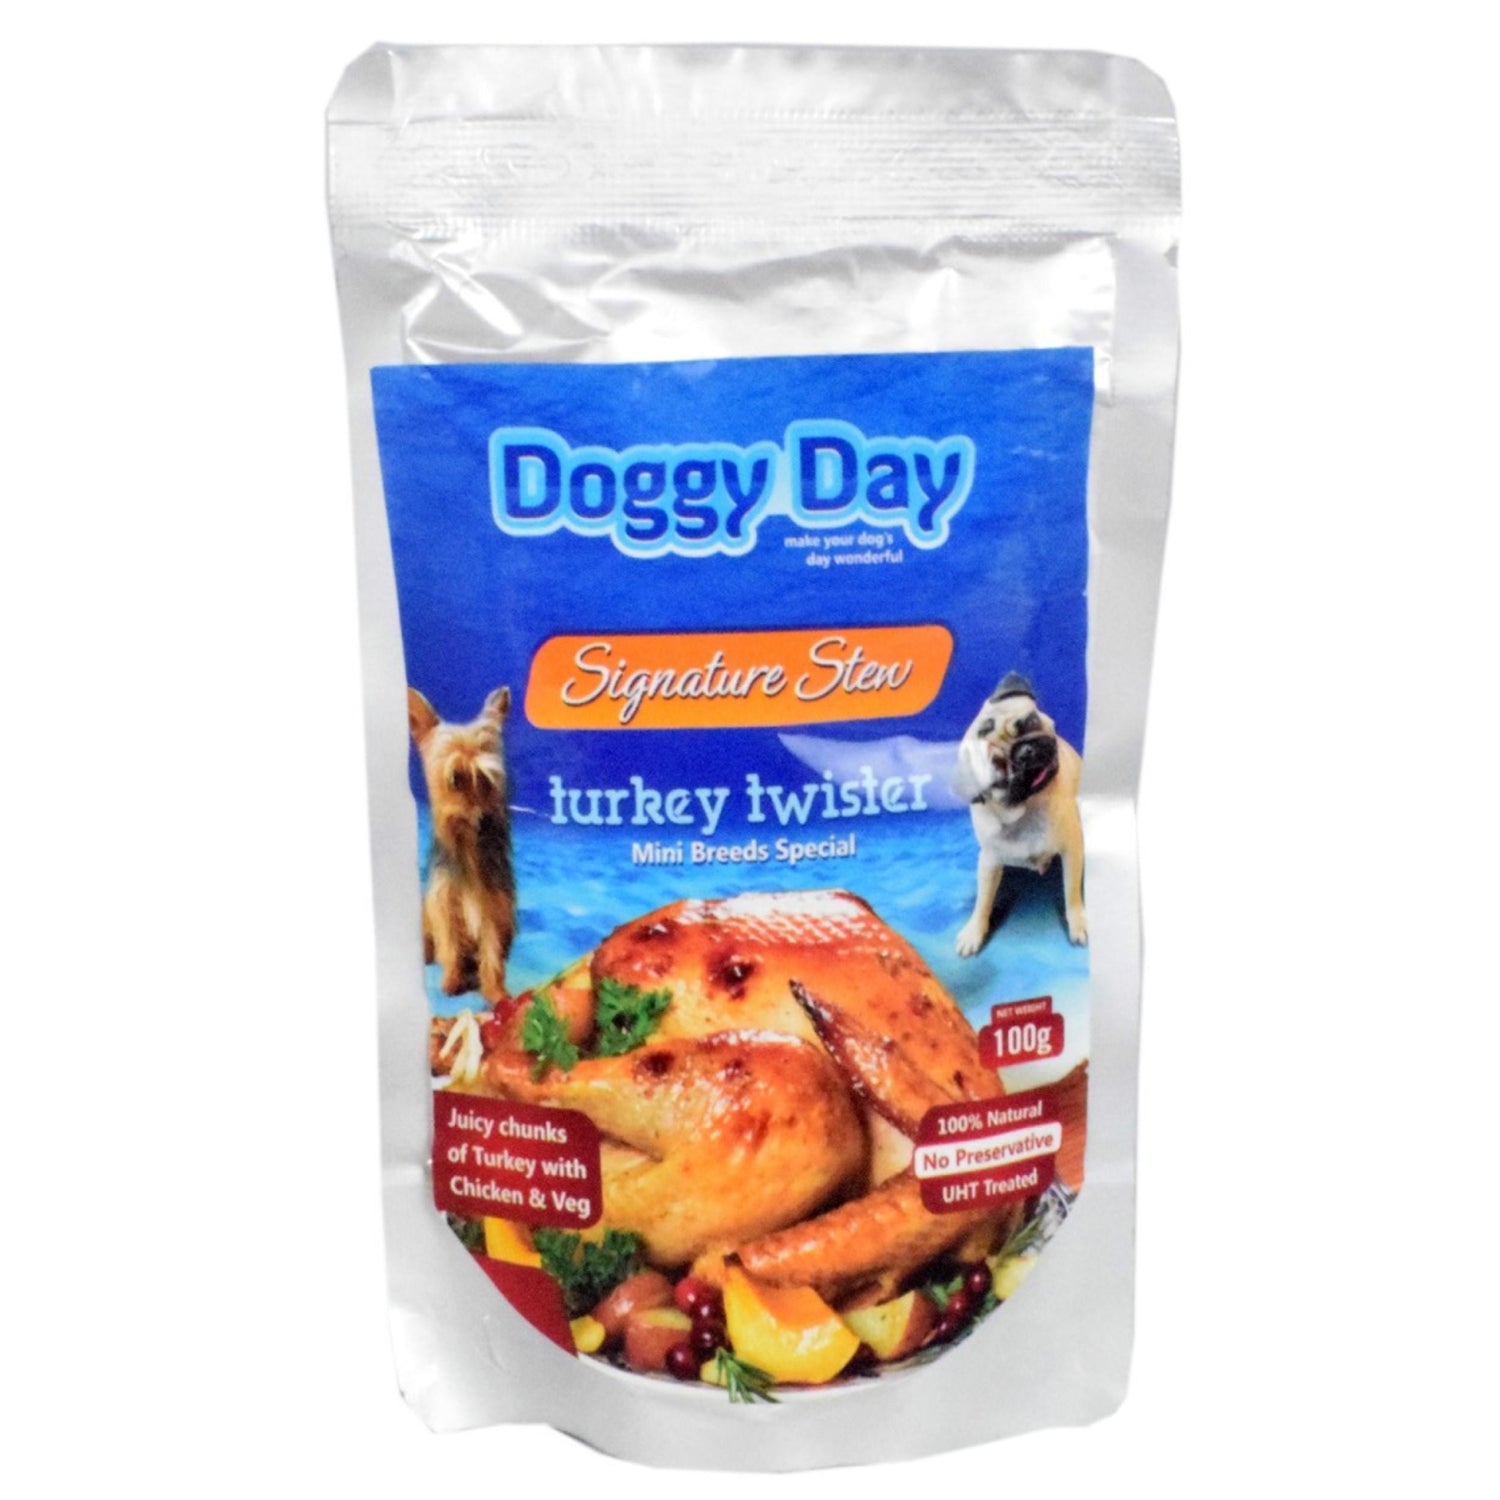 Doggy Day Turkey Twister Gravy 100gm - 12Packs